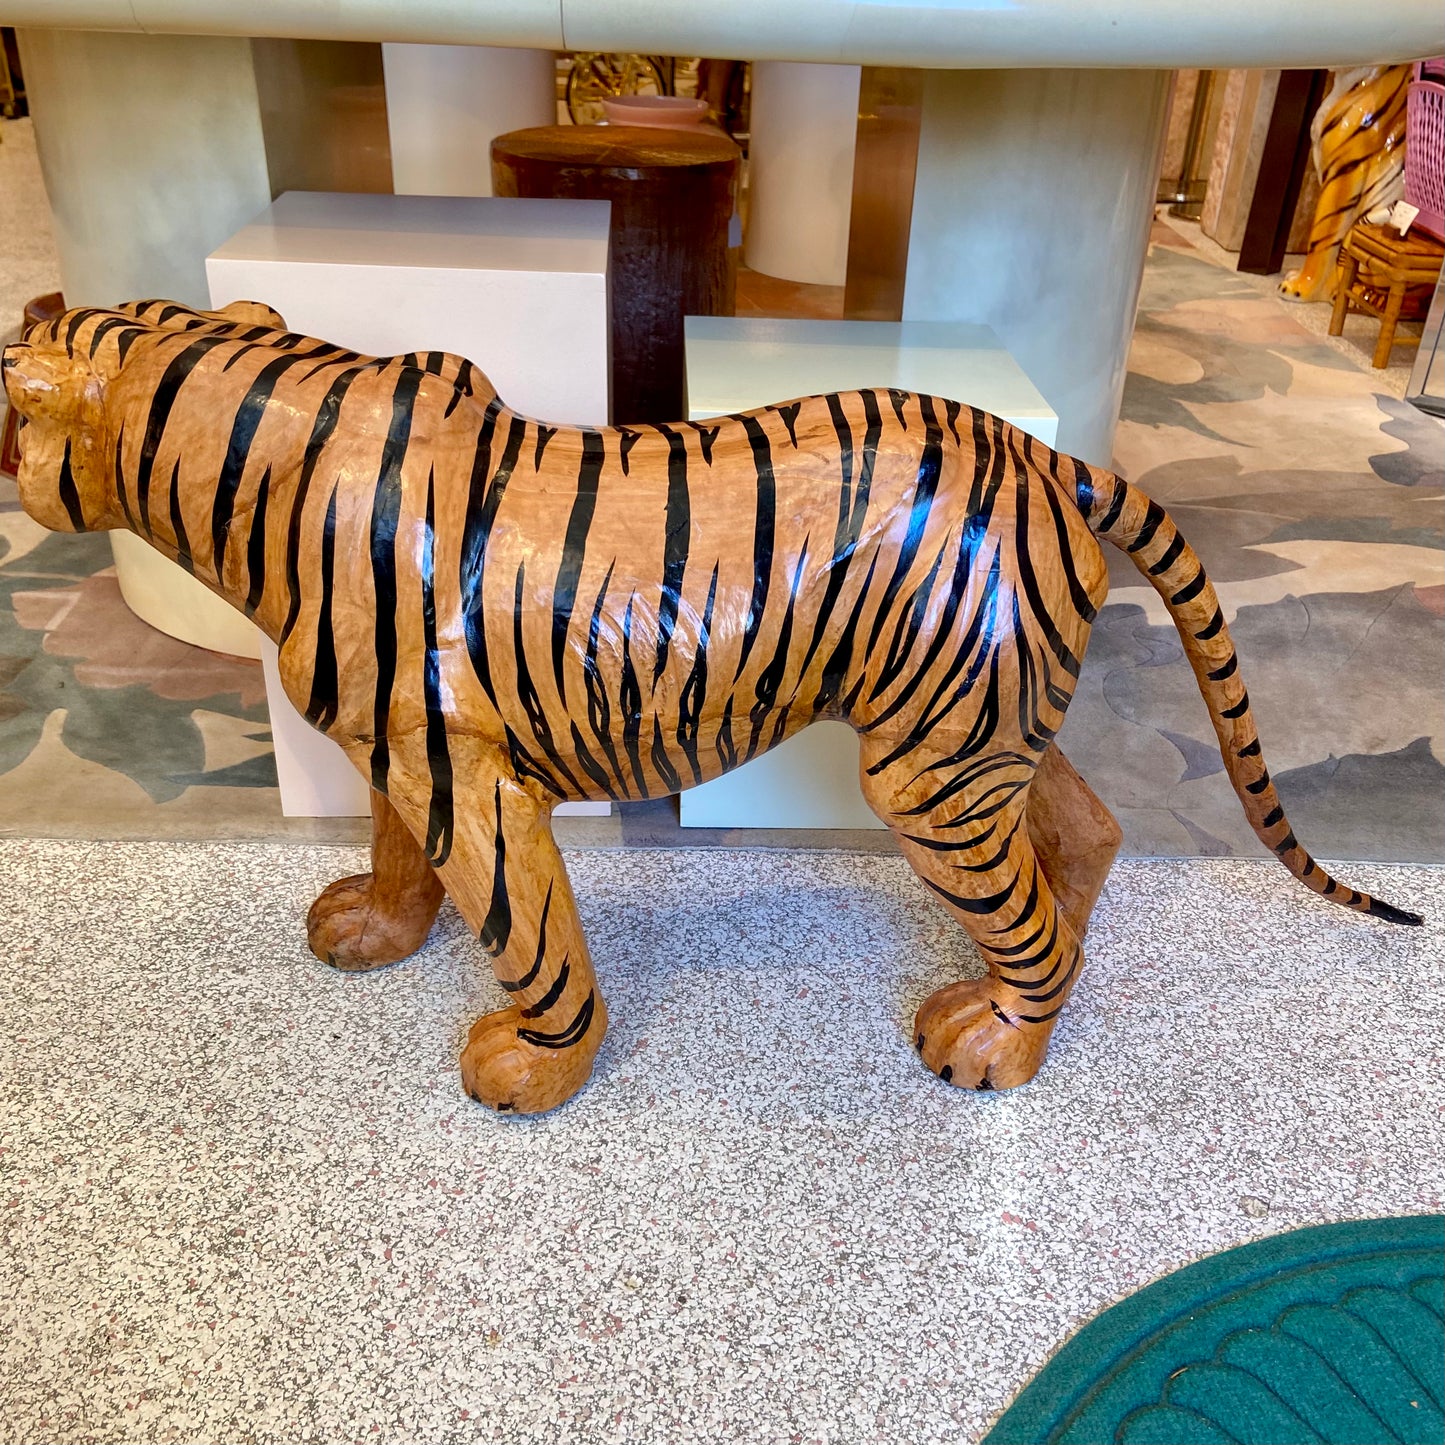 Vintage Leather Tiger Statue.